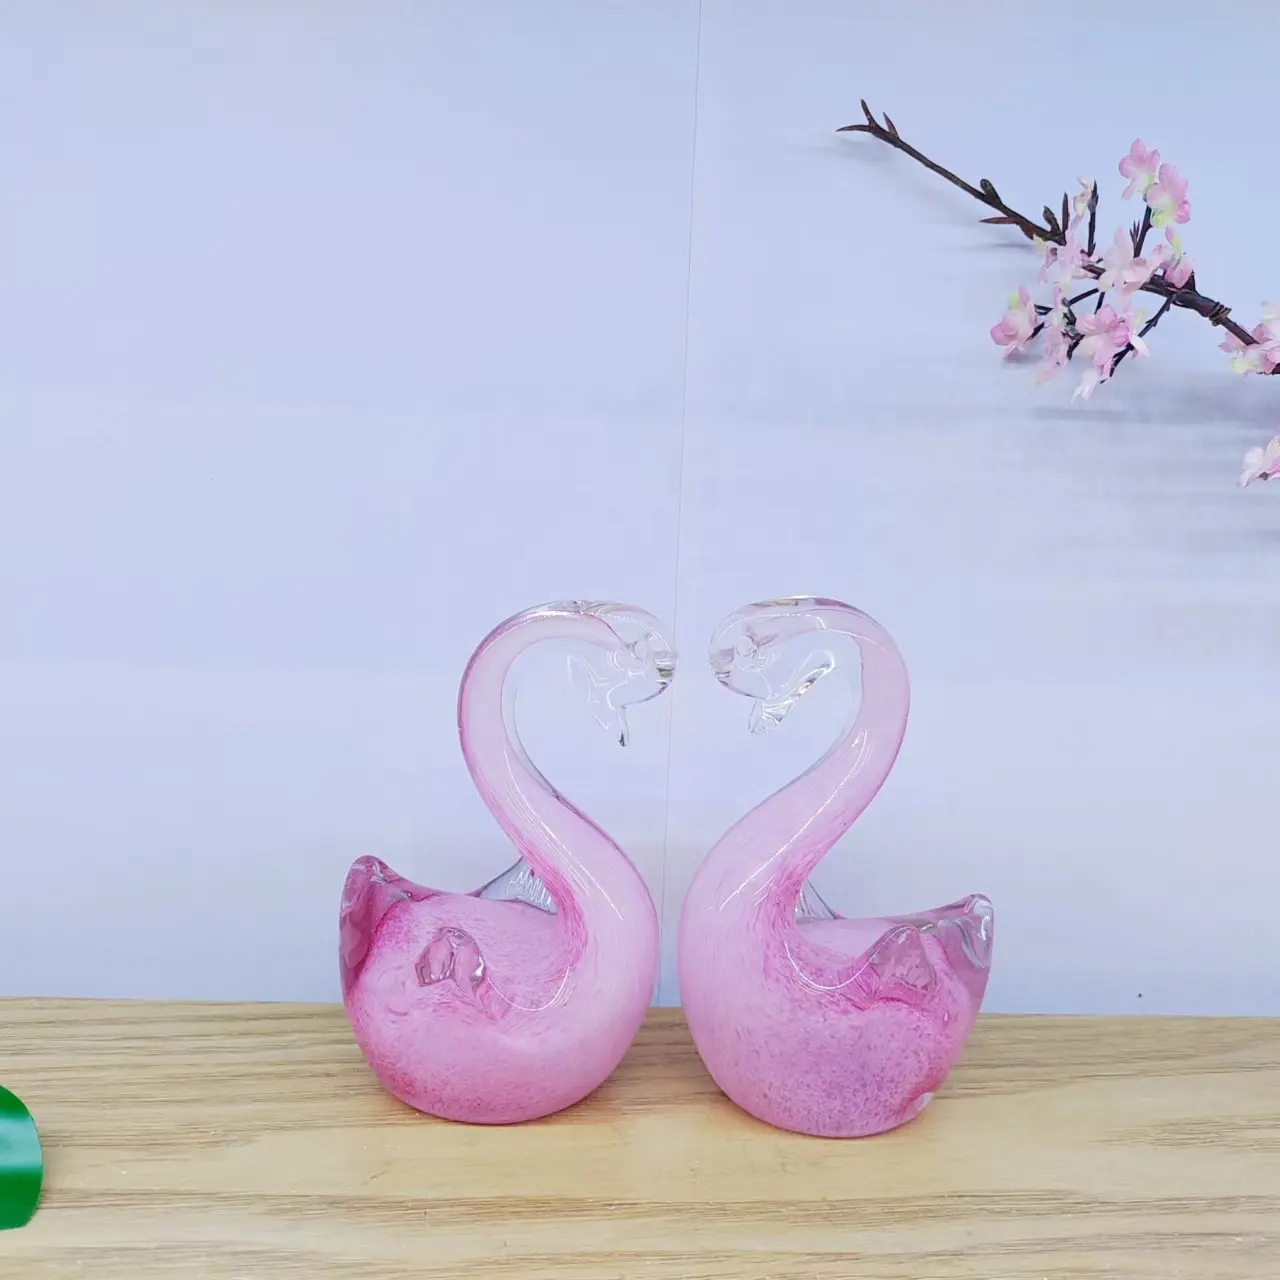 한 쌍 인 스타일 장식 장식품 간단한 창조적 인 발렌타인 선물 수제 컬러 유리 예술 핑크 백조 장식품 입상